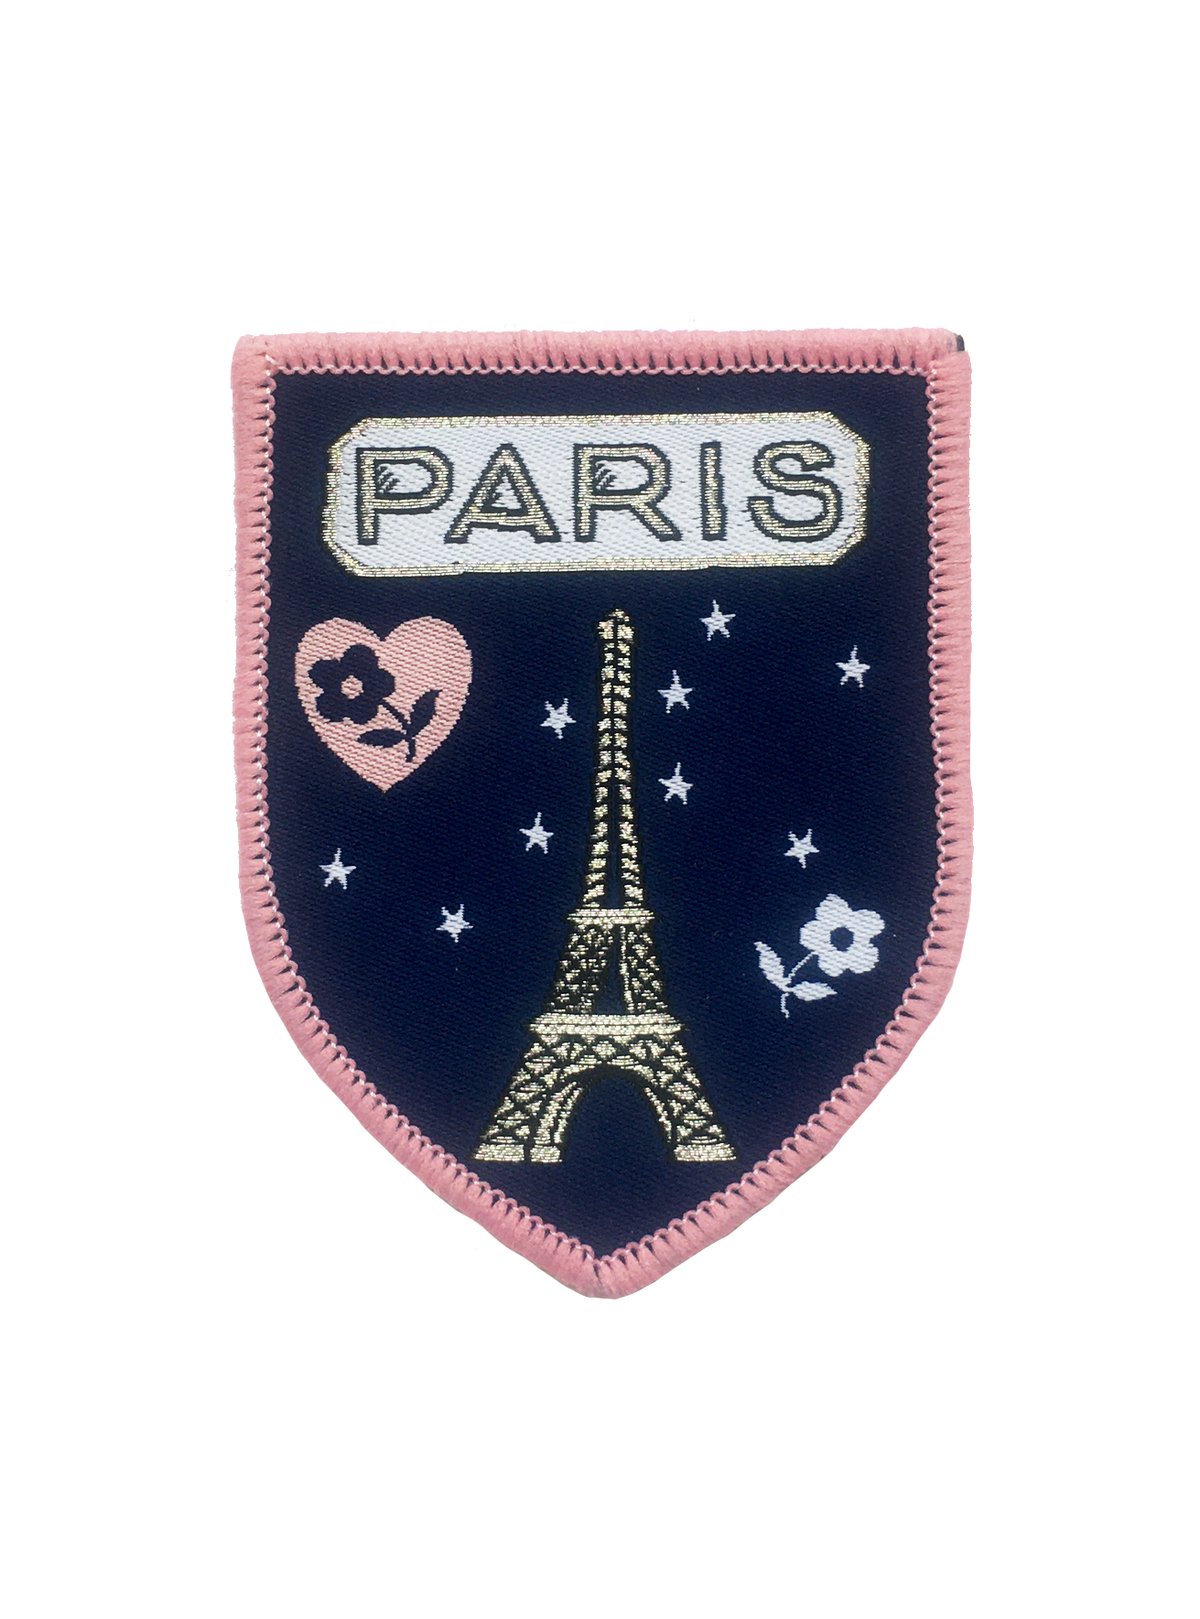 Paris Iron-on Patch